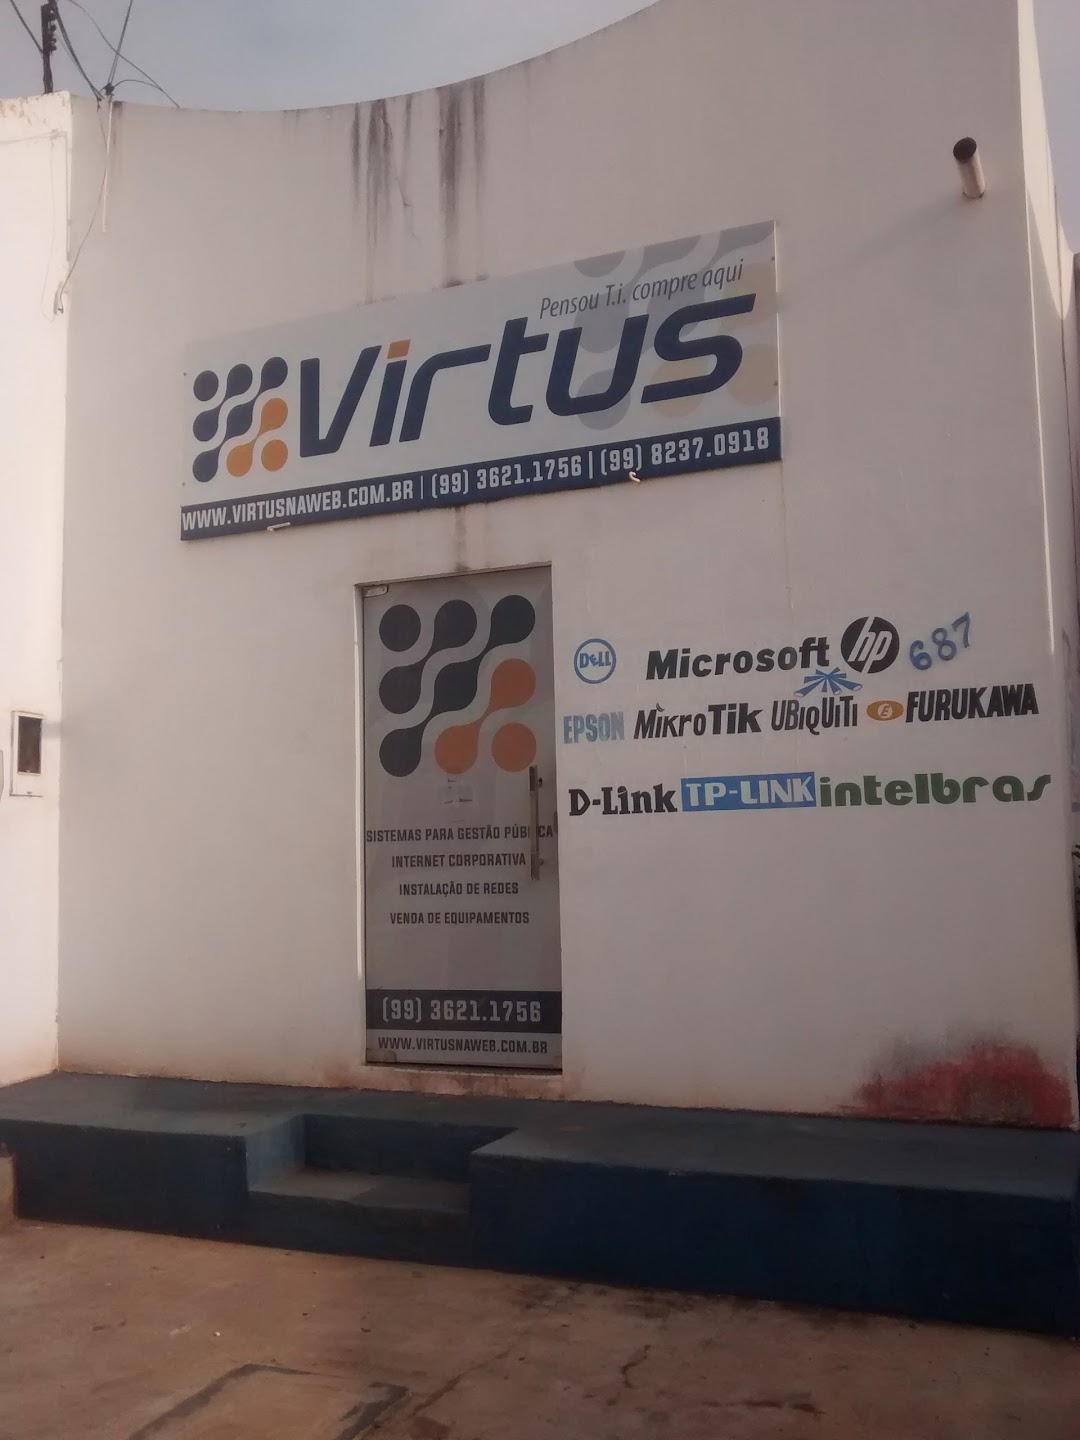 Virtus - Gestão & Tecnologia